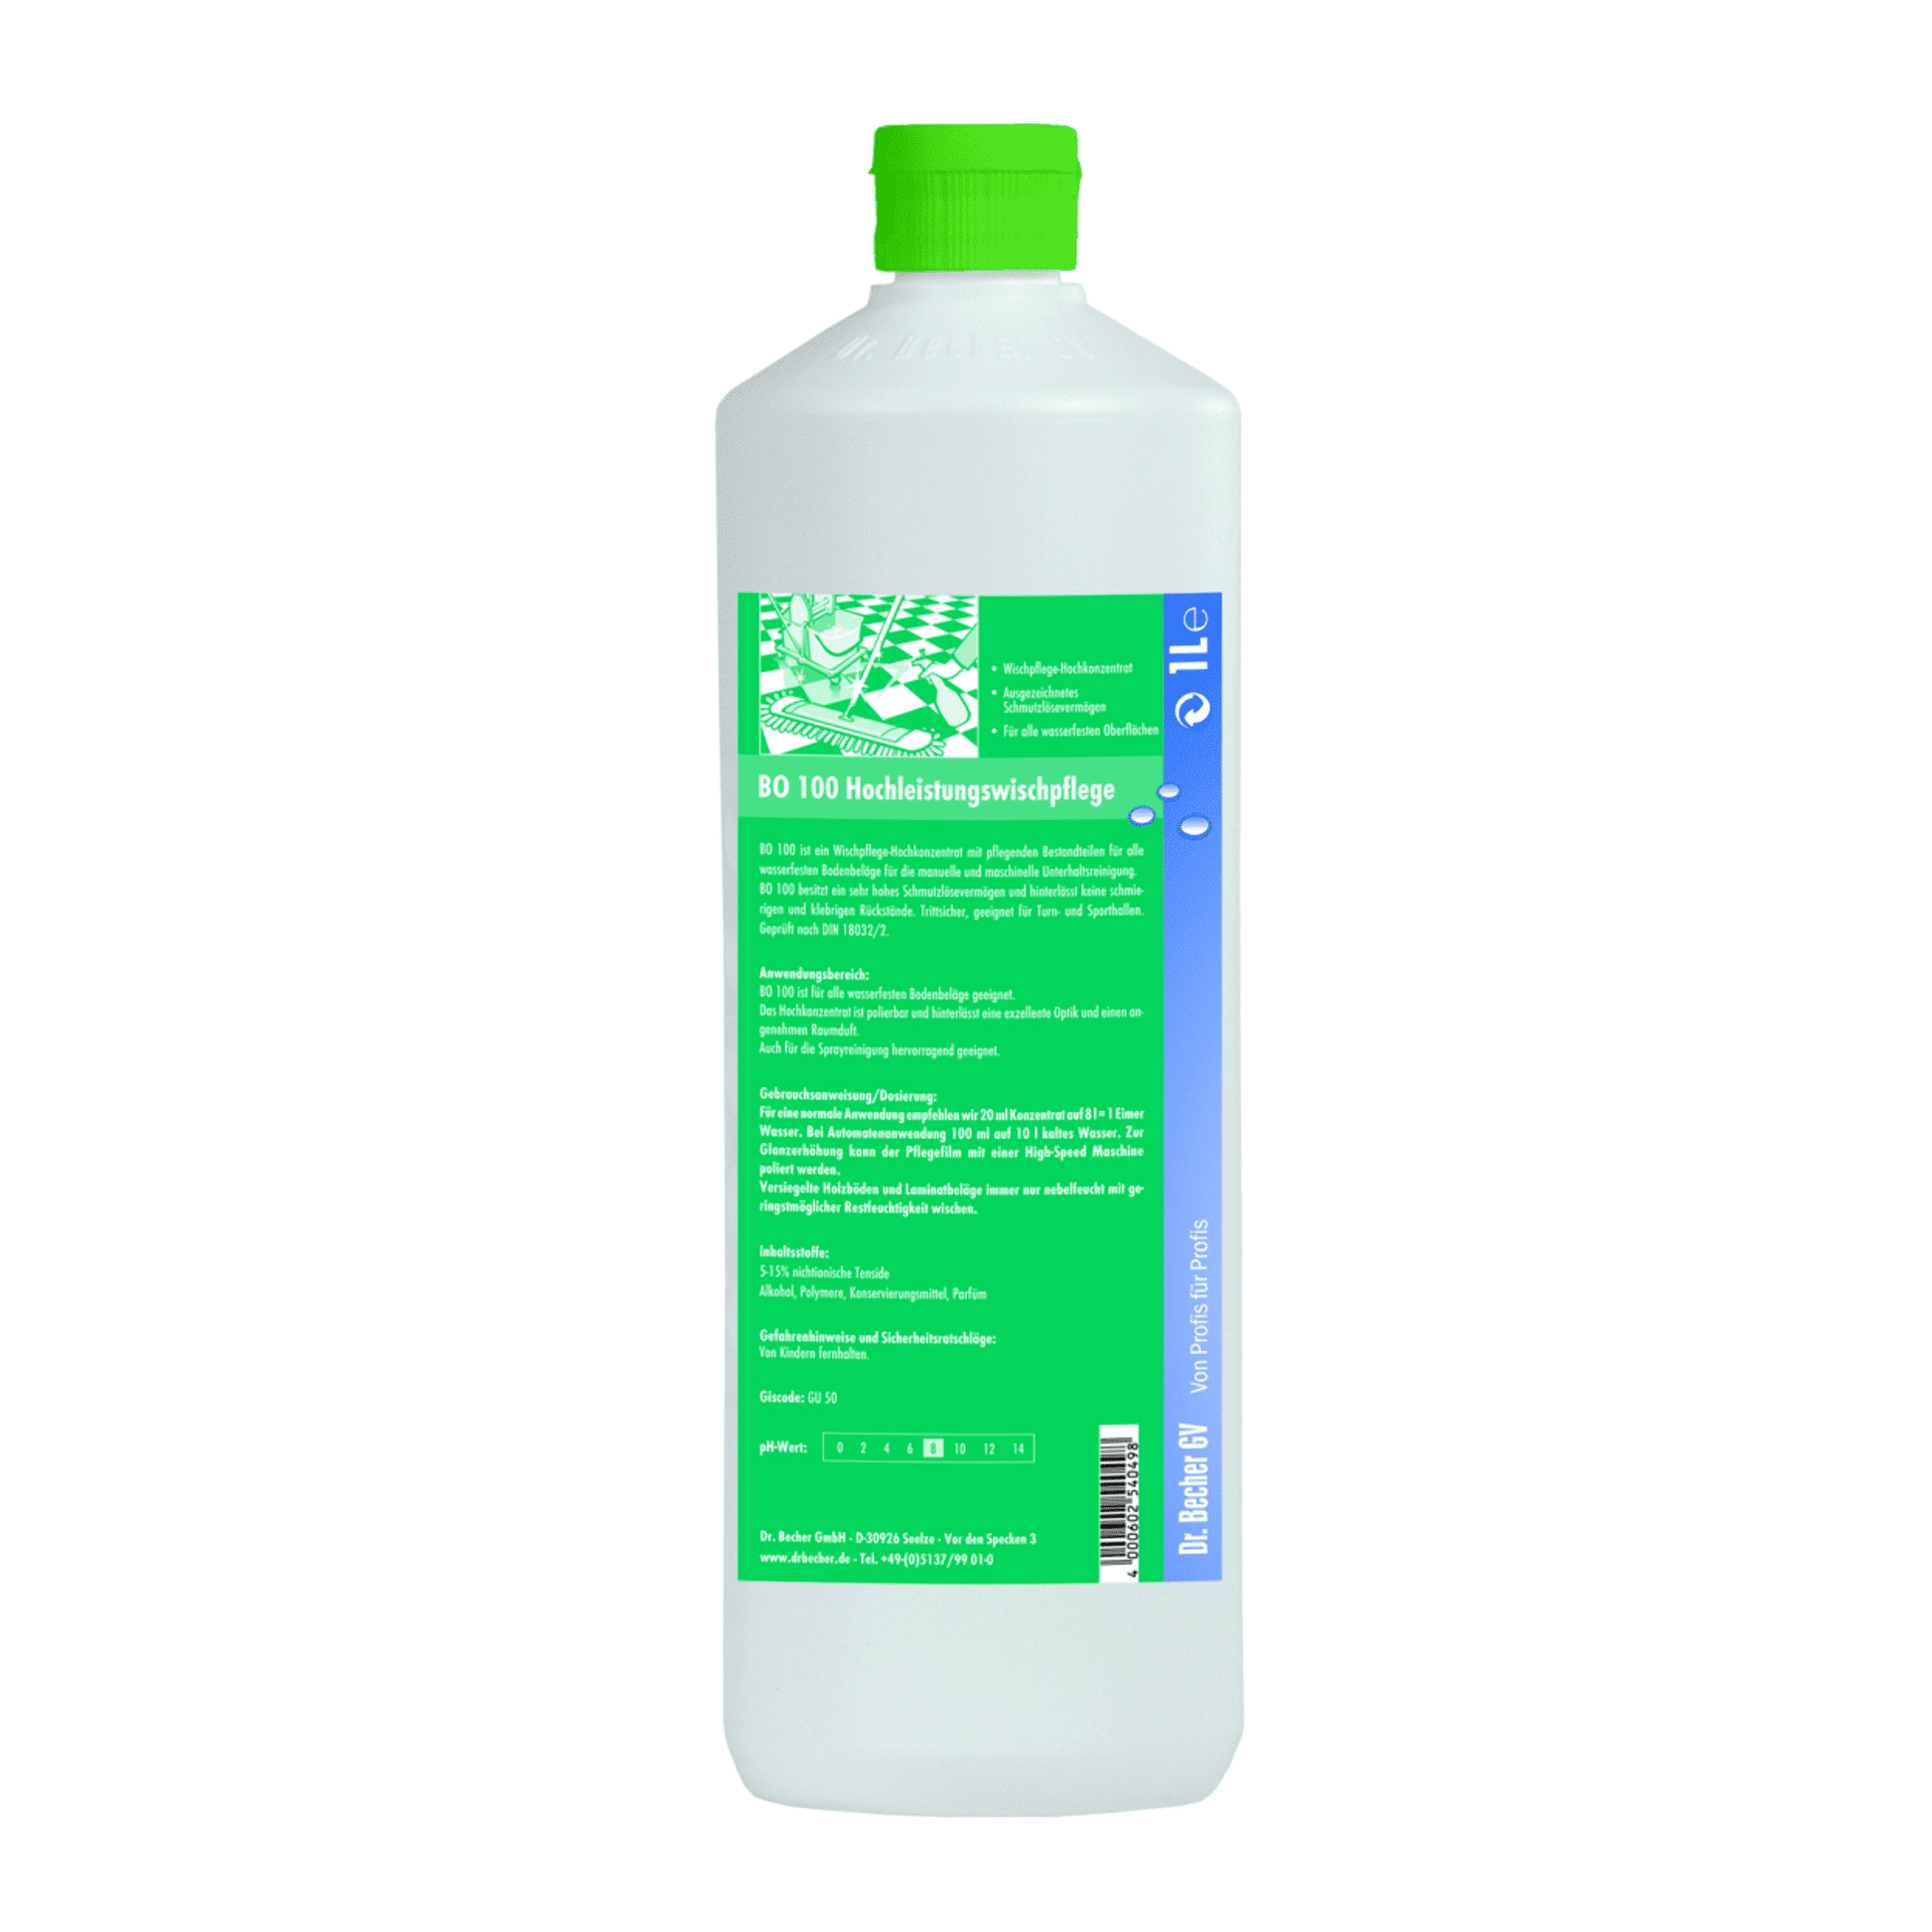 Eine Plastikflasche mit grünem Deckel und einem Etikett in deutscher Sprache mit dem Hinweis „Dr. Becher BO 100 Hochleistungswischpflege“, das darauf schließen lässt, dass es sich um ein Hochleistungsreinigungsmittel handelt. Das Etikett enthält einen grünen Text der Dr. Becher GmbH.